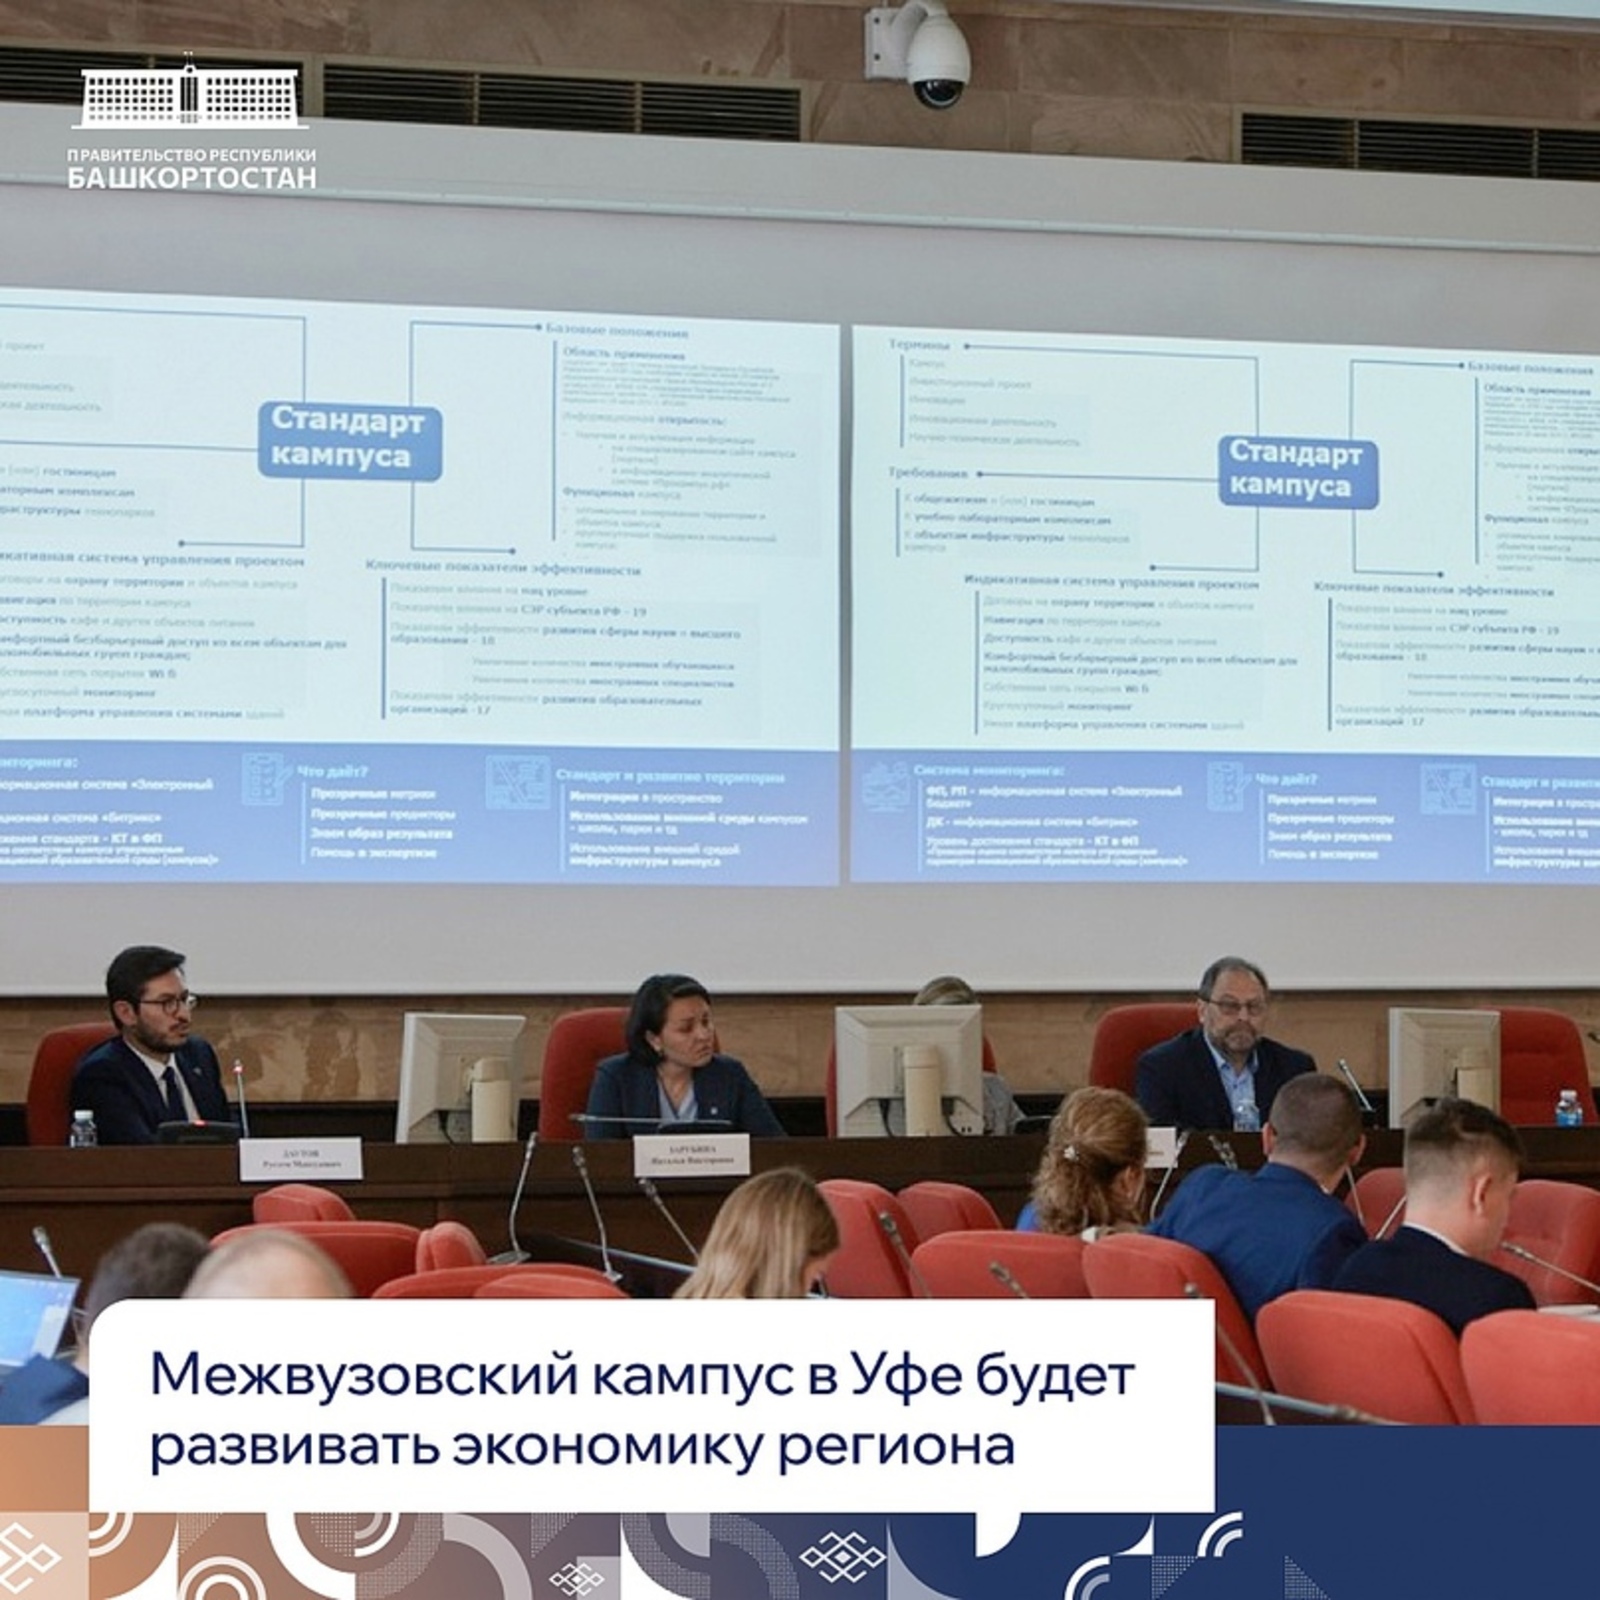 Башкирская делегация участвовала в дискуссии по прогрессивному влиянию образовательных кампусов на экономику